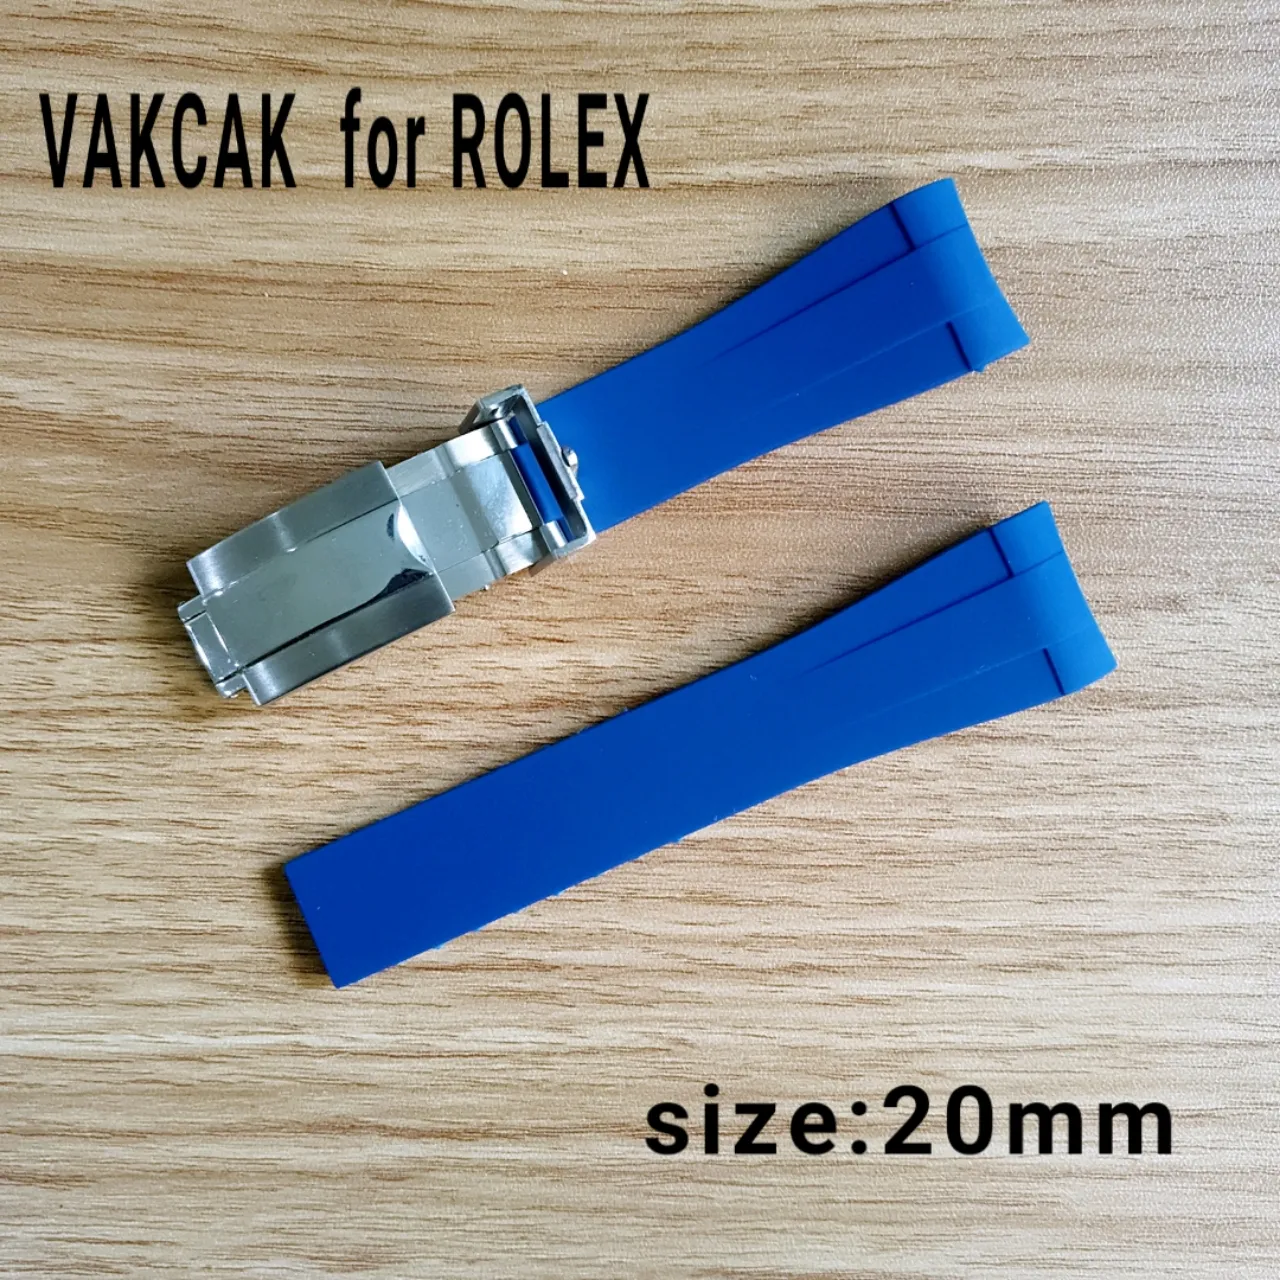 Ремешок размером 20 мм подходит для ROLEX SUB GMT, новый мягкий прочный водонепроницаемый ремешок, аксессуары для часов с серебряной оригинальной стальной застежкой 5211F